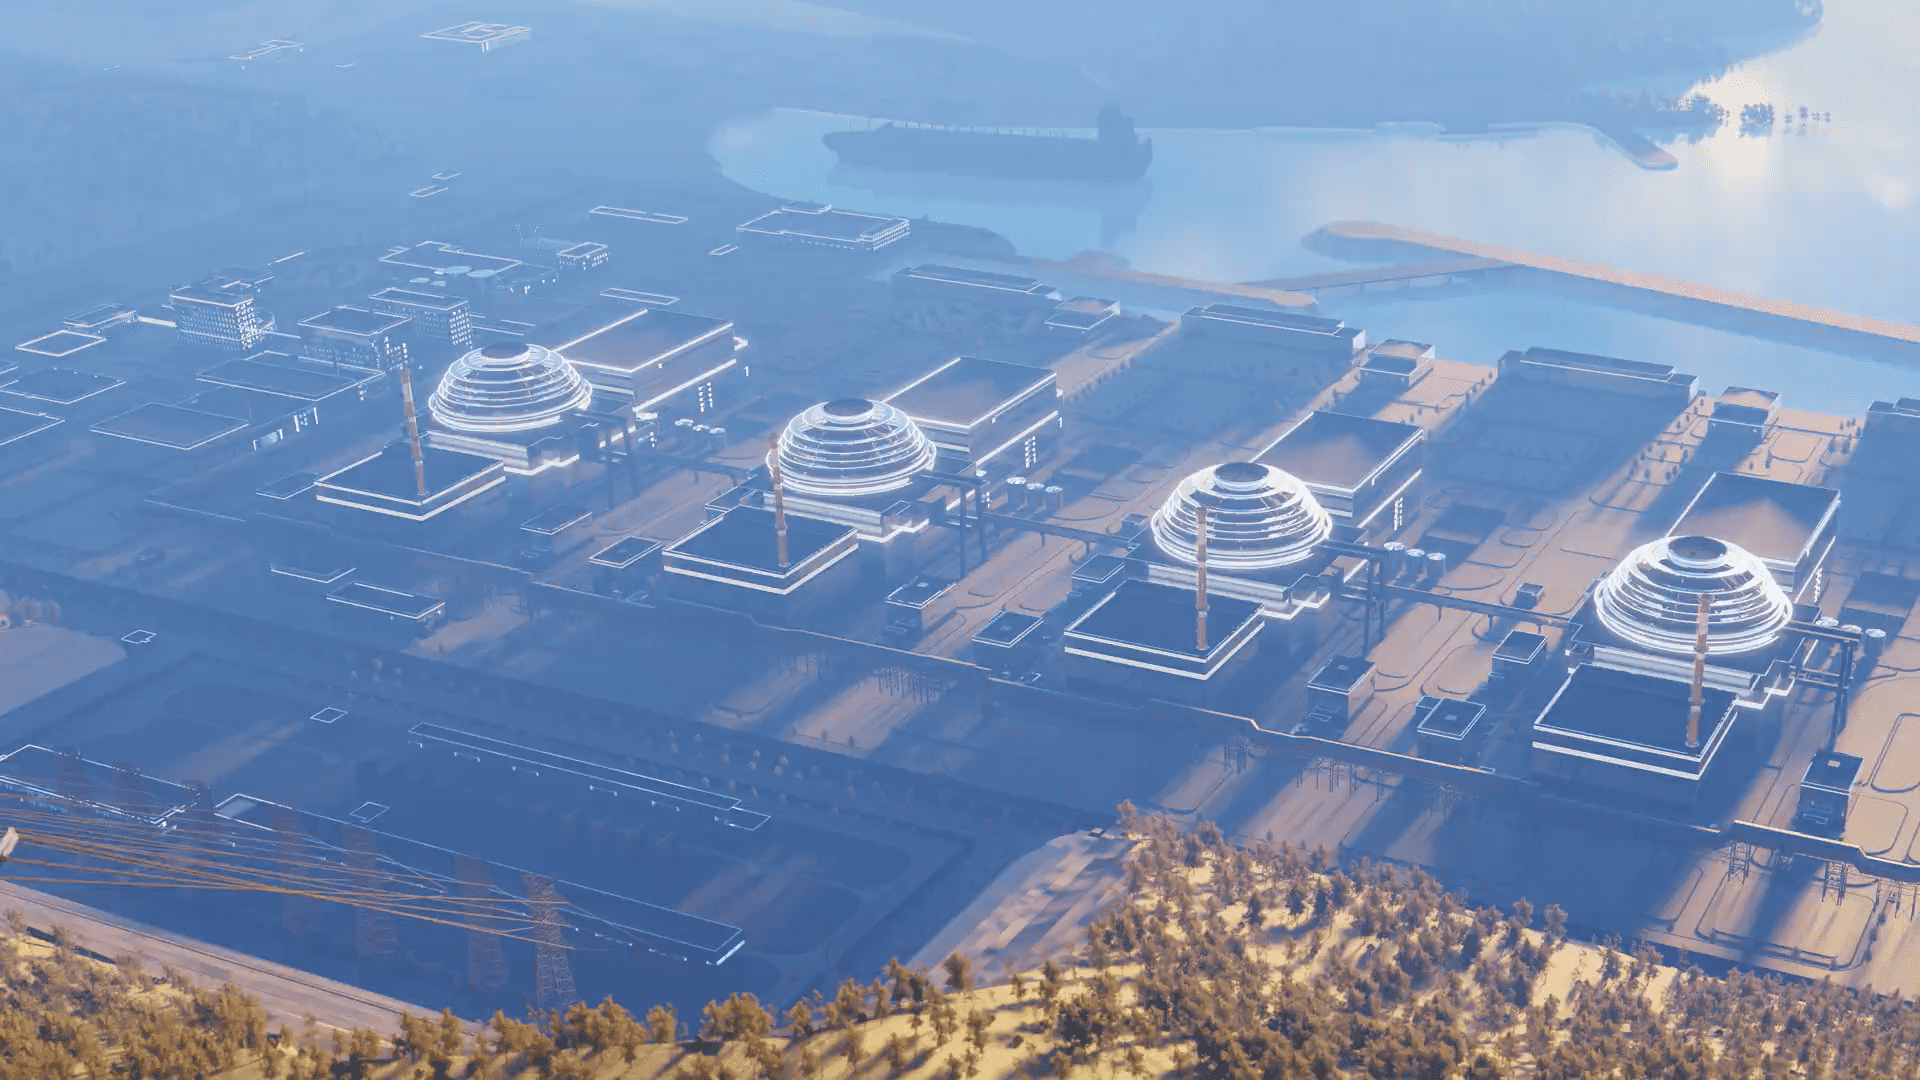 Akkuyu Nükleer Güç Santrali inşaatında sona gelindi